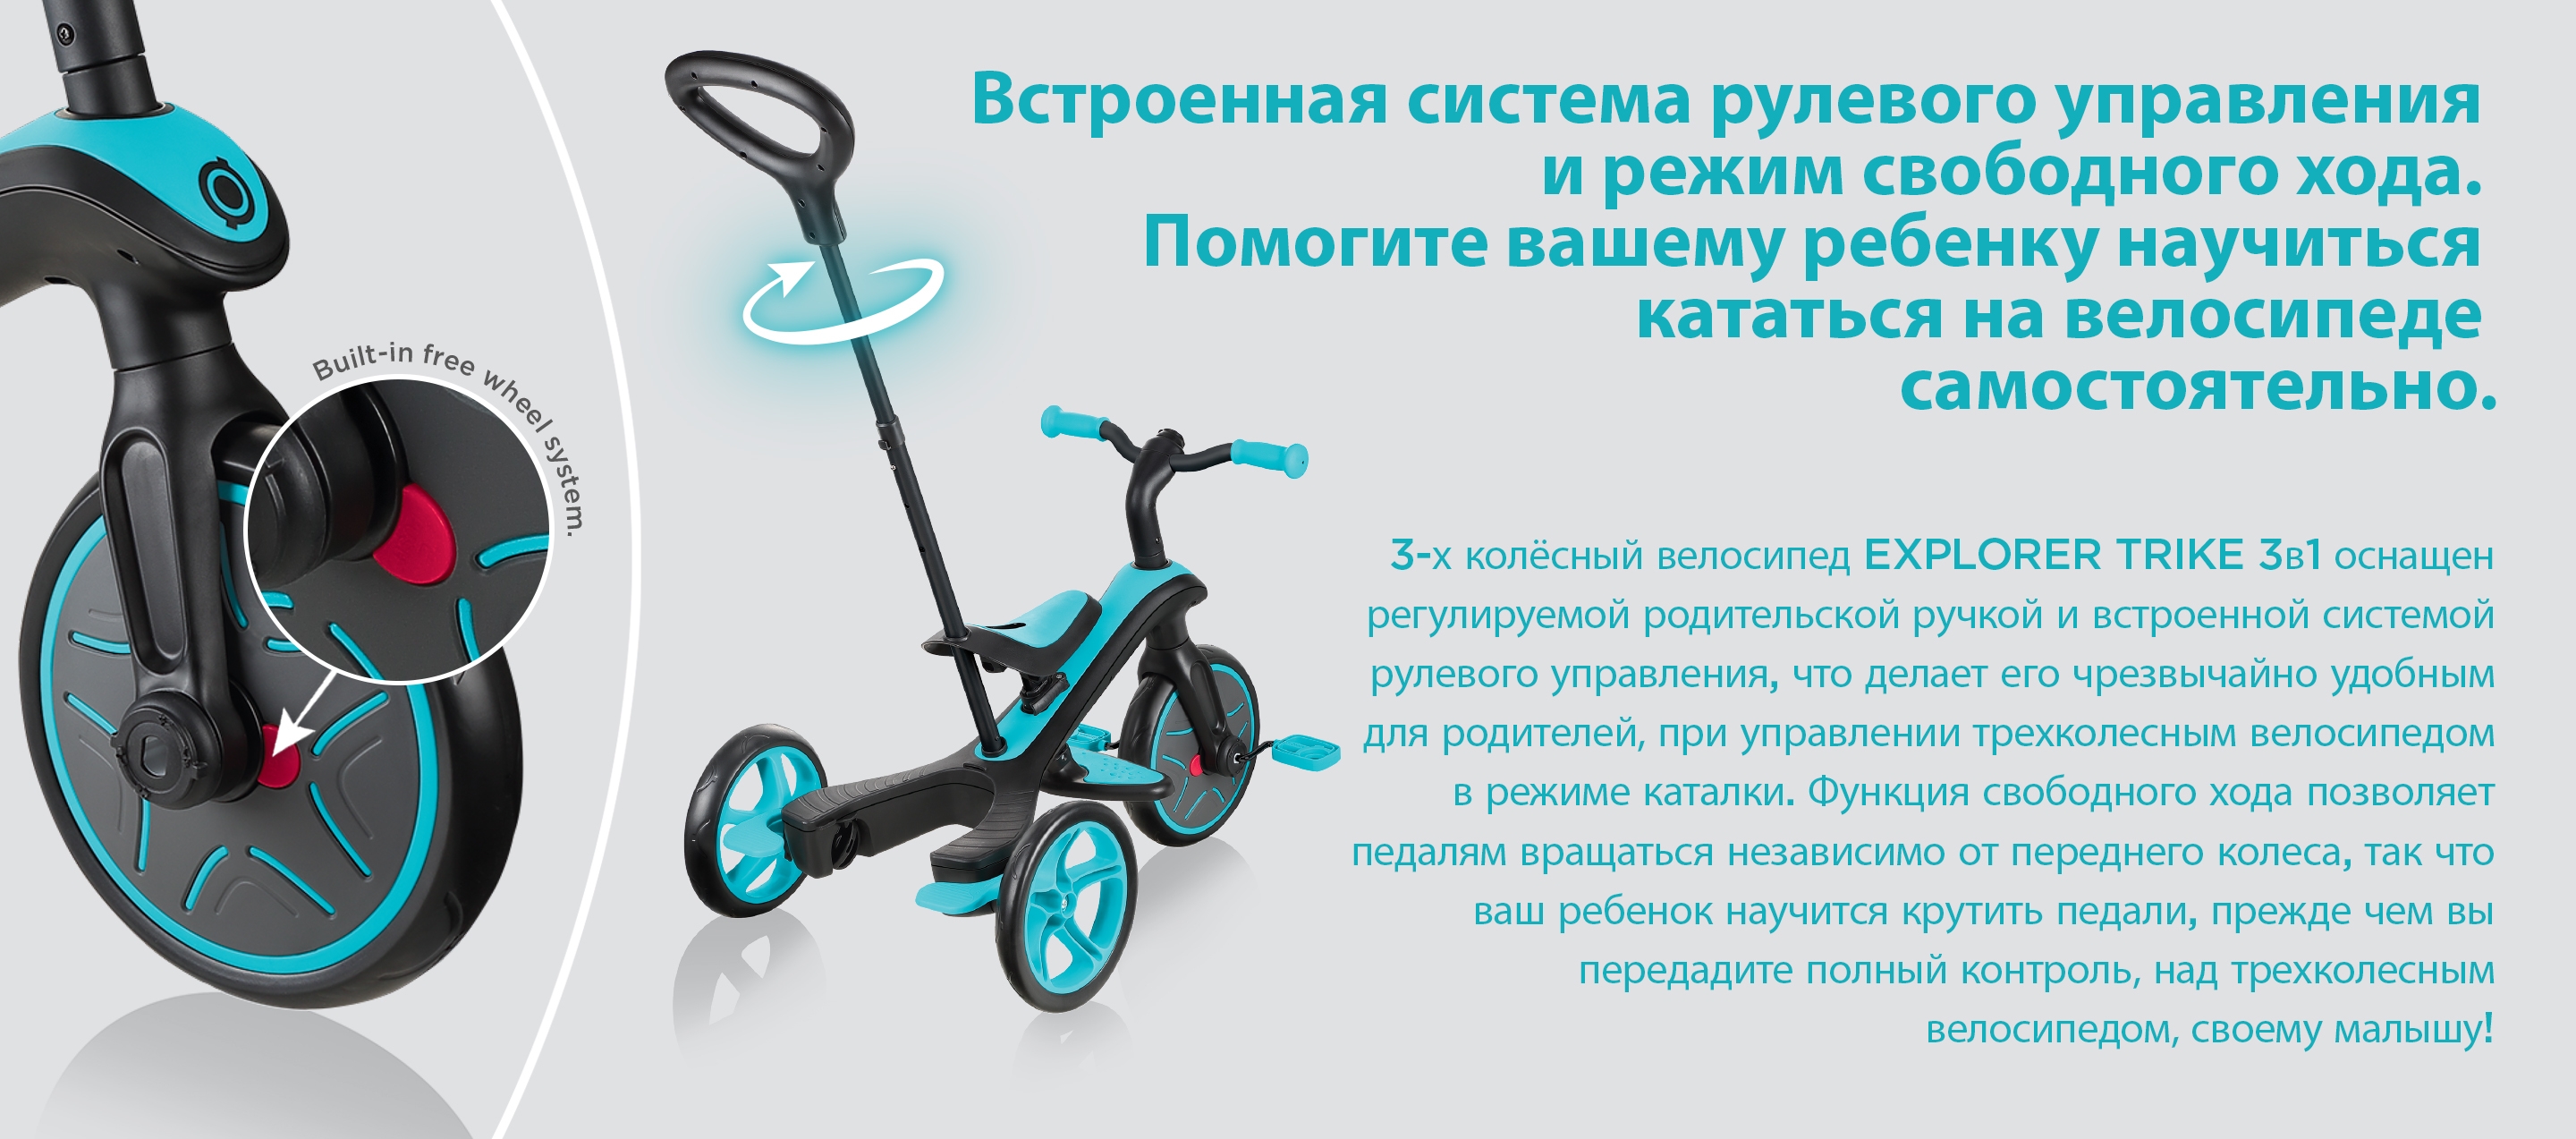 Встроенная система рулевого управления и режим свободного хода. Помогите вашему ребенку научиться кататься на велосипеде самостоятельно. 